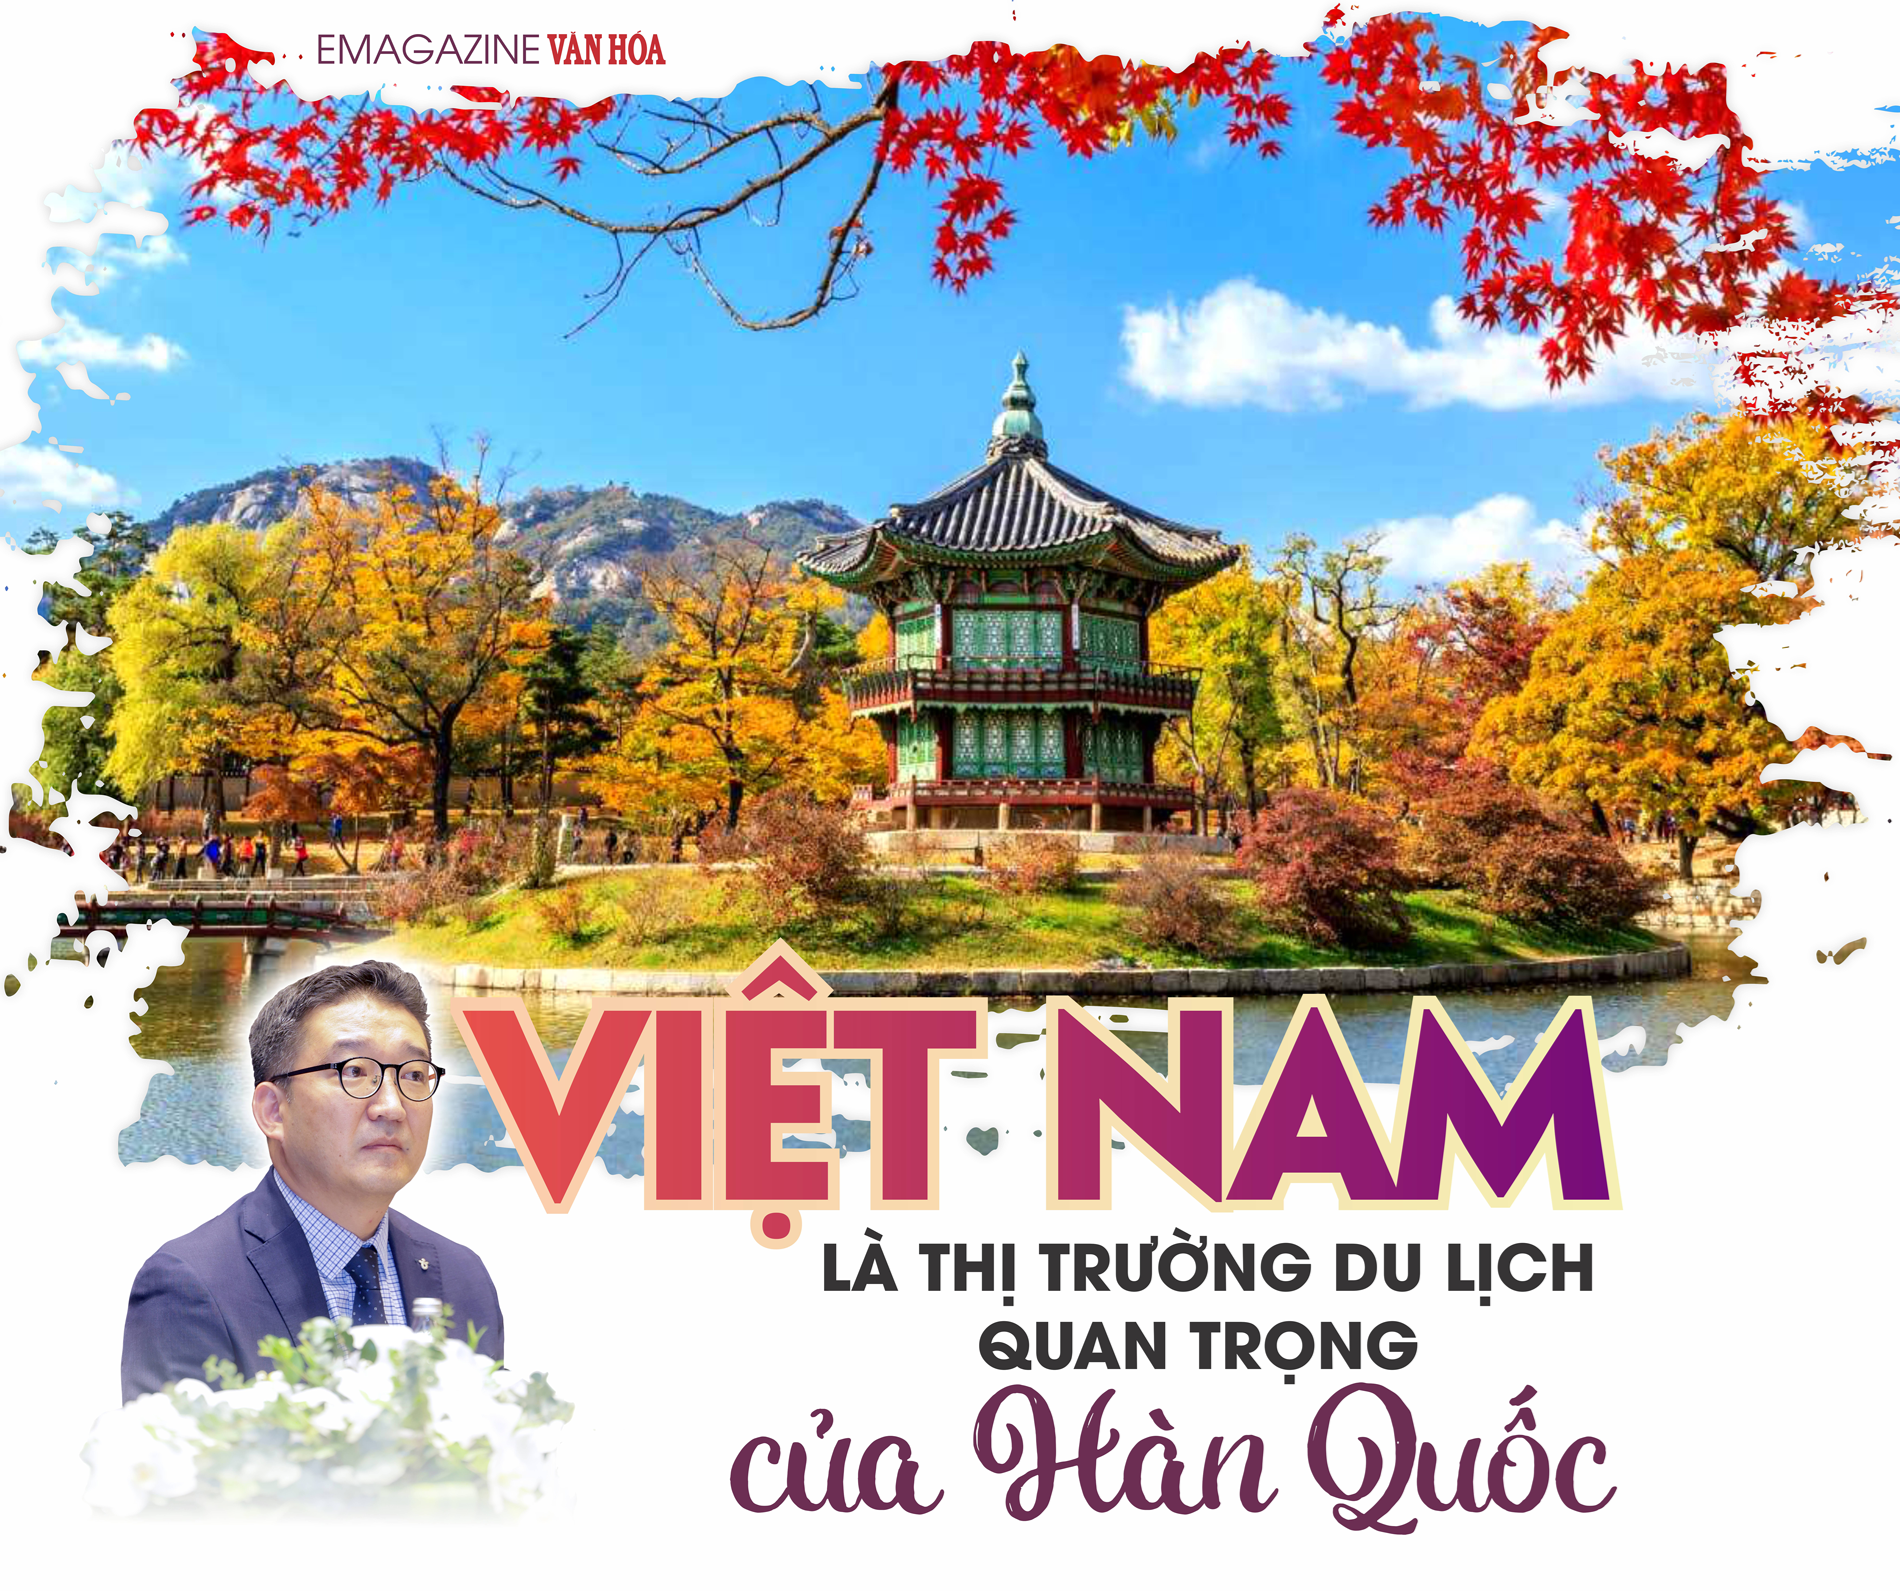 Việt Nam là thị trường du lịch quan trọng của Hàn Quốc - ảnh 1